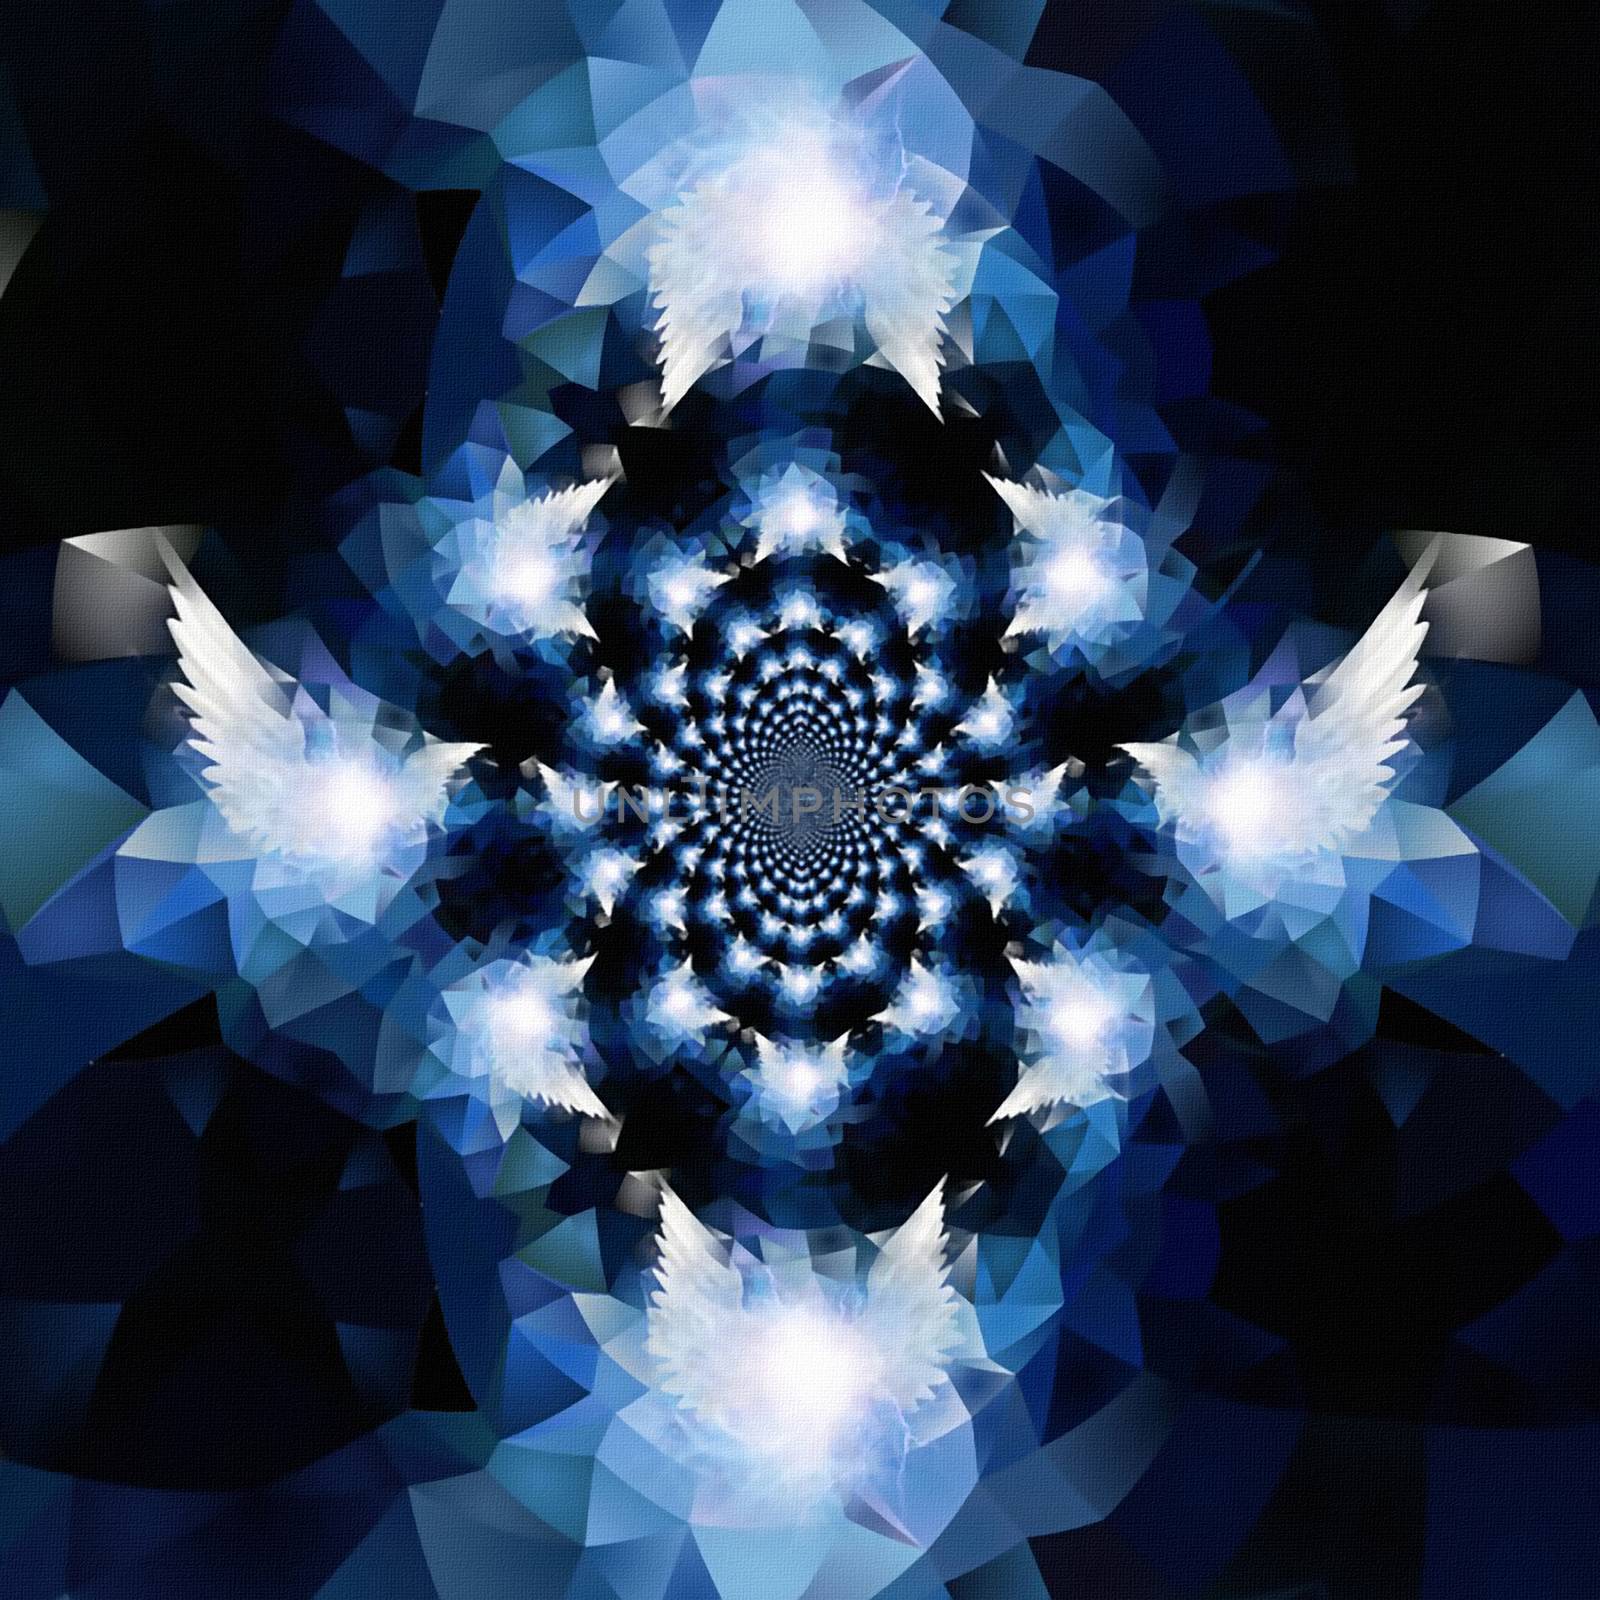 Anges wings. Mirrored fractal. 3D rendering